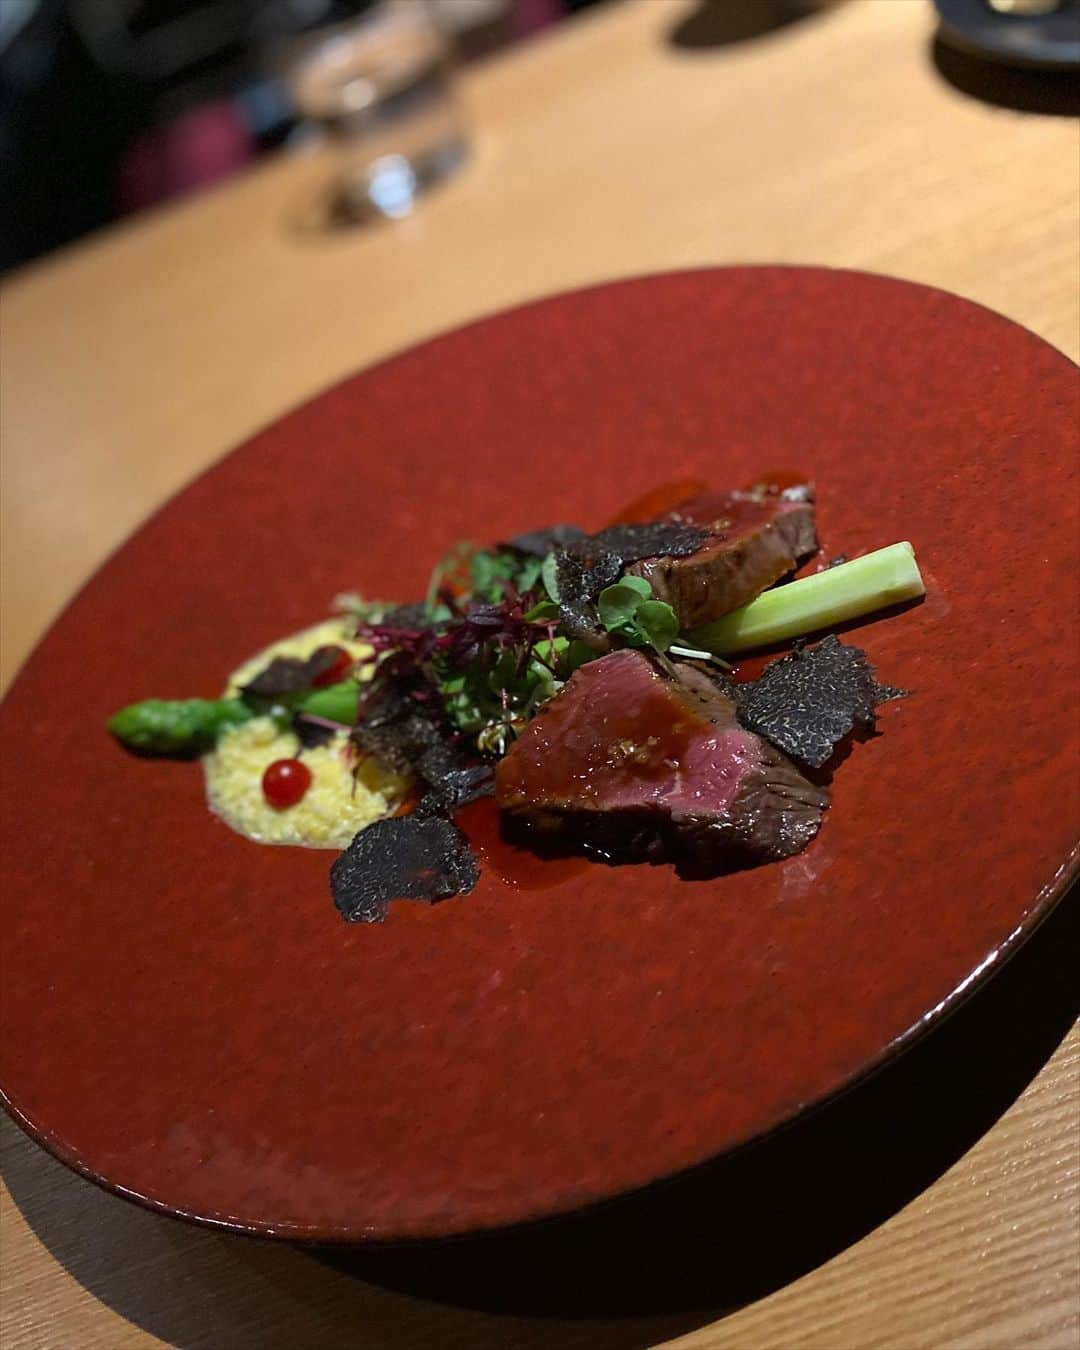 森下愛里沙(もりしたありさ) さんのインスタグラム写真 - (森下愛里沙(もりしたありさ) Instagram)「ㅤㅤㅤㅤㅤㅤㅤㅤㅤㅤㅤㅤㅤ ㅤㅤㅤㅤㅤㅤㅤㅤㅤㅤㅤㅤㅤ ㅤㅤㅤㅤㅤㅤㅤㅤㅤㅤㅤㅤㅤ ㅤㅤㅤㅤㅤㅤㅤㅤㅤㅤㅤㅤㅤ @ezomaeda さんのディナー🍽 ㅤㅤㅤㅤㅤㅤㅤㅤㅤㅤㅤㅤㅤ ㅤㅤㅤㅤㅤㅤㅤㅤㅤㅤㅤㅤㅤ 季節の厳選素材コースを頂きました！ ㅤㅤㅤㅤㅤㅤㅤㅤㅤㅤㅤㅤㅤ ㅤㅤㅤㅤㅤㅤㅤㅤㅤㅤㅤㅤㅤ ㅤㅤㅤㅤㅤㅤㅤㅤㅤㅤㅤㅤㅤ ㅤㅤㅤㅤㅤㅤㅤㅤㅤㅤㅤㅤㅤ 北海道の新鮮な野菜やお肉、 海鮮を使ったコースでとても美味しかったです。 ㅤㅤㅤㅤㅤㅤㅤㅤㅤㅤㅤㅤㅤ 私はこの時初めて鹿肉をいただいたの ですが美味しすぎて初め鹿肉だと気付きませんでした🥺 ㅤㅤㅤㅤㅤㅤㅤㅤㅤㅤㅤㅤㅤ このお店のおかげで鹿肉が好きになりました🦌💕 ㅤㅤㅤㅤㅤㅤㅤㅤㅤㅤㅤㅤㅤ ㅤㅤㅤㅤㅤㅤㅤㅤㅤㅤㅤㅤㅤ シェフの前田さんもスタッフさんもとても面白い方で 楽しい時間を過ごす事ができました🍷 ㅤㅤㅤㅤㅤㅤㅤㅤㅤㅤㅤㅤㅤ ㅤㅤㅤㅤㅤㅤㅤㅤㅤㅤㅤㅤㅤ ㅤㅤㅤㅤㅤㅤㅤㅤㅤㅤㅤㅤㅤ ㅤㅤㅤㅤㅤㅤㅤㅤㅤㅤㅤㅤㅤ 海鮮類もお野菜もとっても新鮮で 凄く美味しかったです。 ㅤㅤㅤㅤㅤㅤㅤㅤㅤㅤㅤㅤㅤ ㅤㅤㅤㅤㅤㅤㅤㅤㅤㅤㅤㅤㅤ ㅤㅤㅤㅤㅤㅤㅤㅤㅤㅤㅤㅤㅤ ㅤㅤㅤㅤㅤㅤㅤㅤㅤㅤㅤㅤㅤ ワンピース @spicaglow  ⁣●サイトで購入した商品を1000円引きで買える クーポンがあるので良かったら使用してください🙋🏻‍♀️ ⁣→クーポンコード : arsg⁣  ㅤㅤㅤㅤㅤㅤㅤㅤㅤㅤㅤㅤㅤ ㅤㅤㅤㅤㅤㅤㅤㅤㅤㅤㅤㅤㅤ ㅤㅤㅤㅤㅤㅤㅤㅤㅤㅤㅤㅤㅤ ㅤㅤㅤㅤㅤㅤㅤㅤㅤㅤㅤㅤㅤ ㅤㅤㅤㅤㅤㅤㅤㅤㅤㅤㅤㅤㅤ #EZO #赤坂フレンチ #赤坂ezo #隠れ家 #赤坂旬の素材 #赤坂ワイン #赤坂デート #pr #コラボベース #spicaglow⁣ #spicaglowstyle⁣ #ファッション #ワンピースコーデ #ワンピース #韓国ファッション #今日のコーデ #l4l #like4likes #ootd #instagood #outfit #instalike #fashion #팔로미 #팔로우미」7月24日 20時48分 - mini.ari